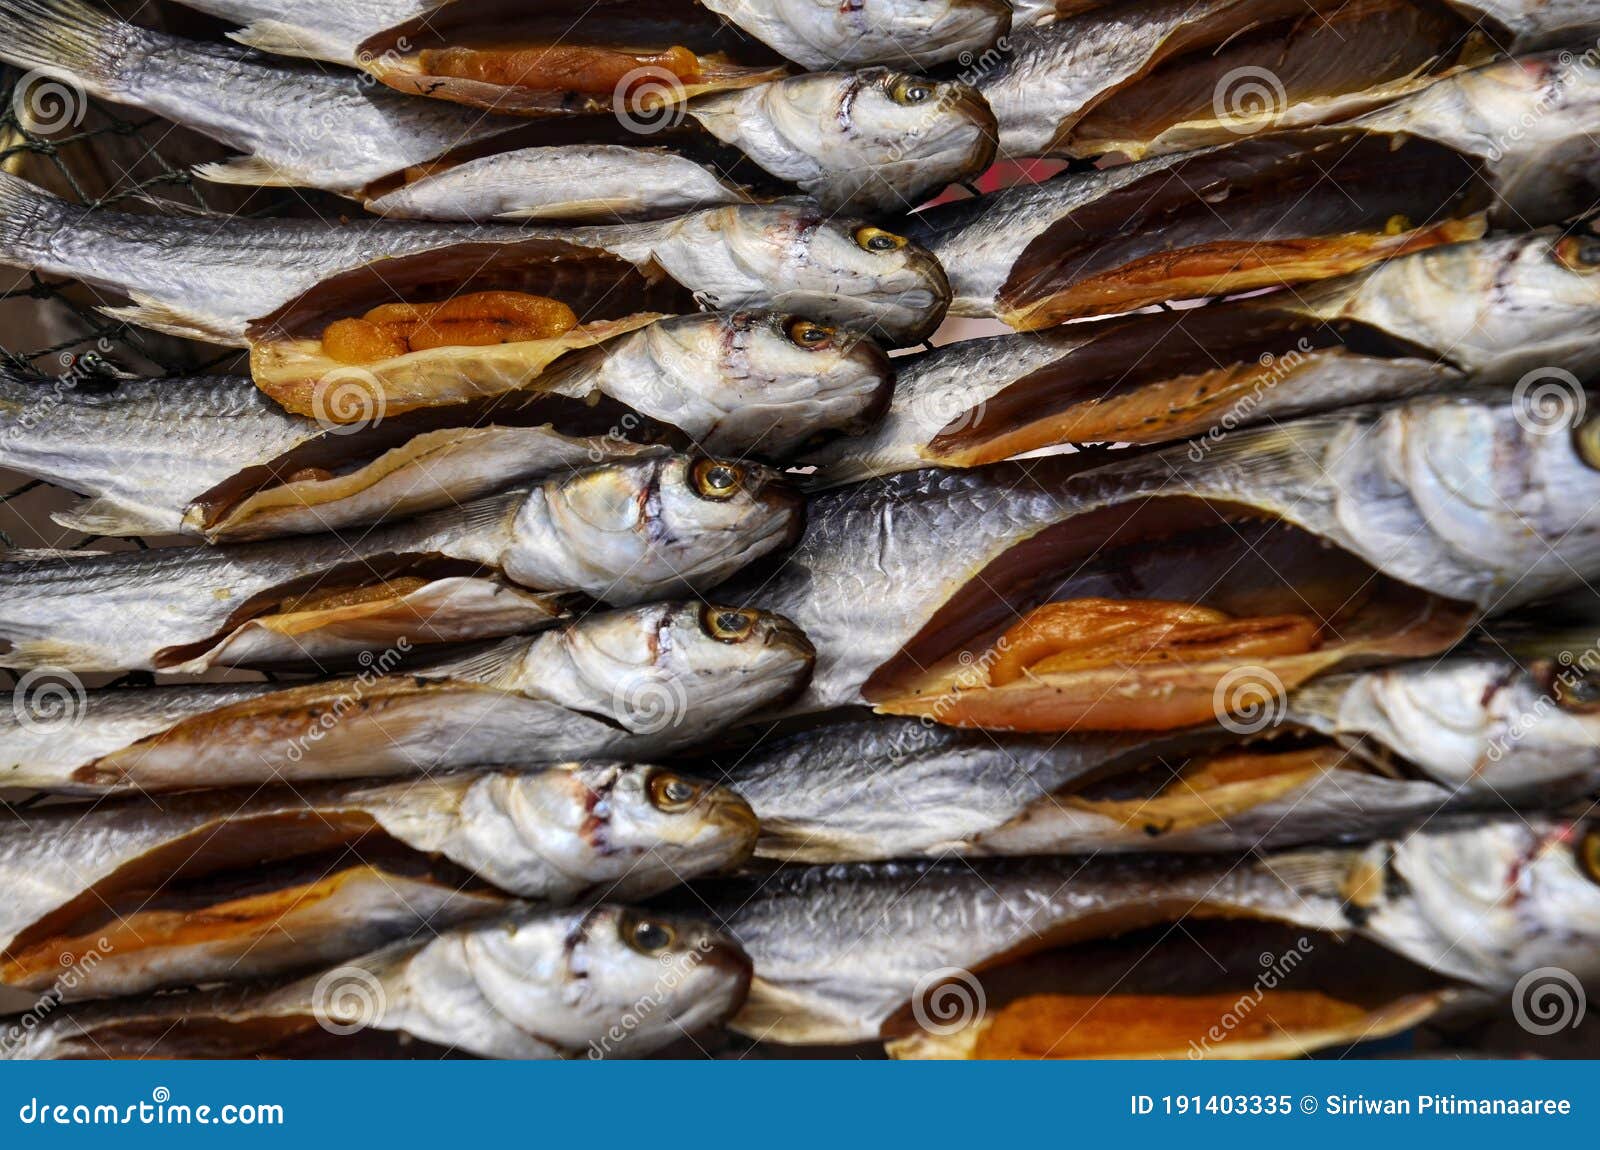 无头咸鱼干 咸鱼干 黄花鱼干 海鲜干货 500g 有价有量 货源充-阿里巴巴